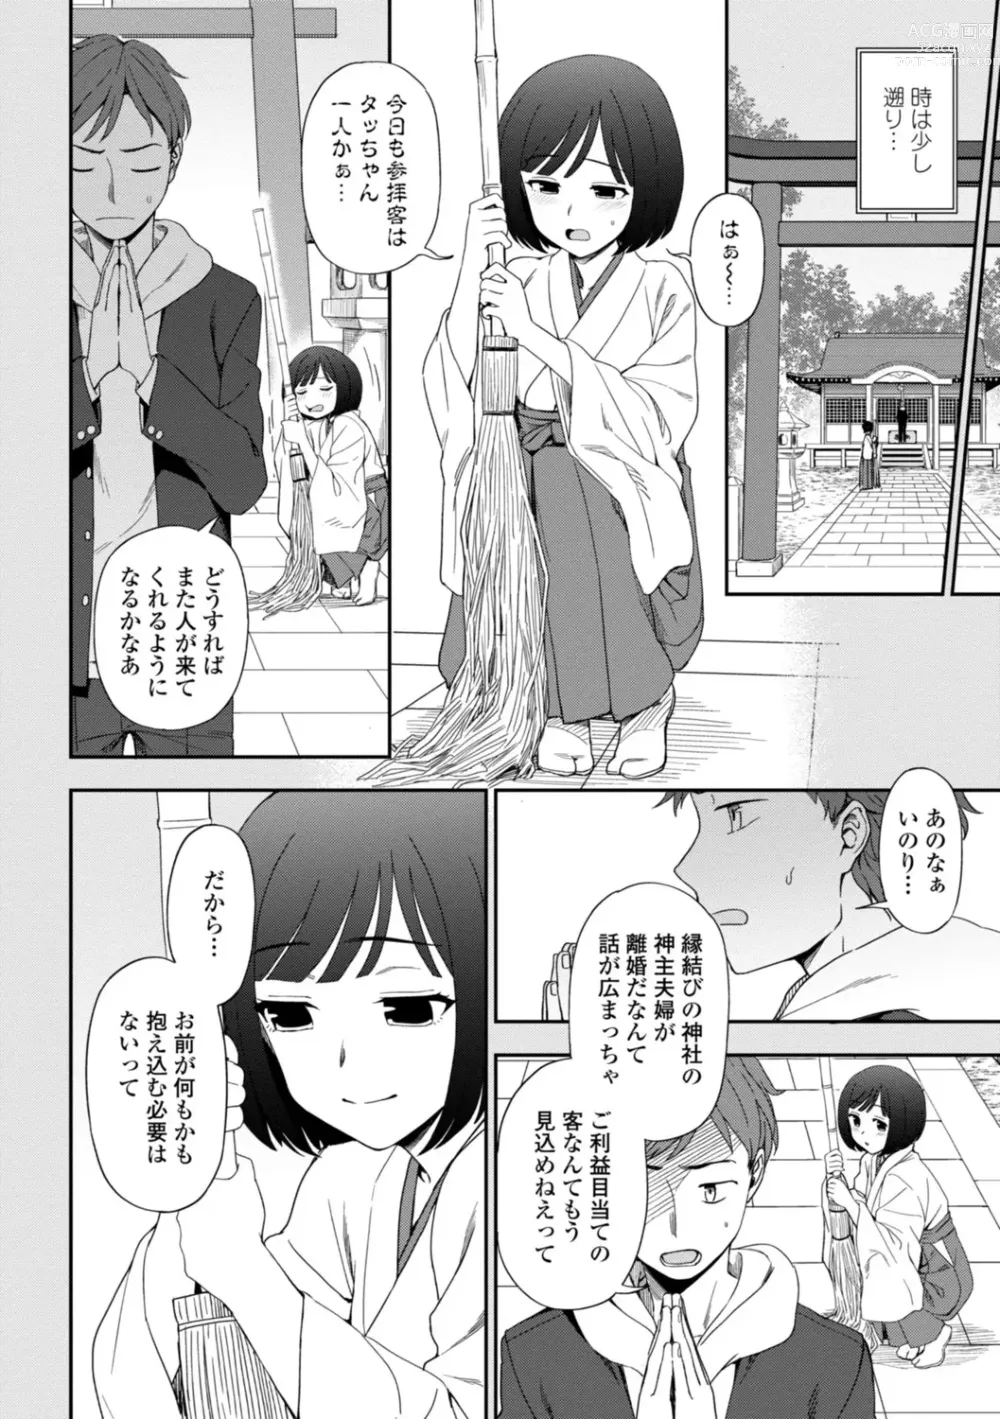 Page 6 of manga Watashi no Subete Sasagemasu - Ill give you all of mine.